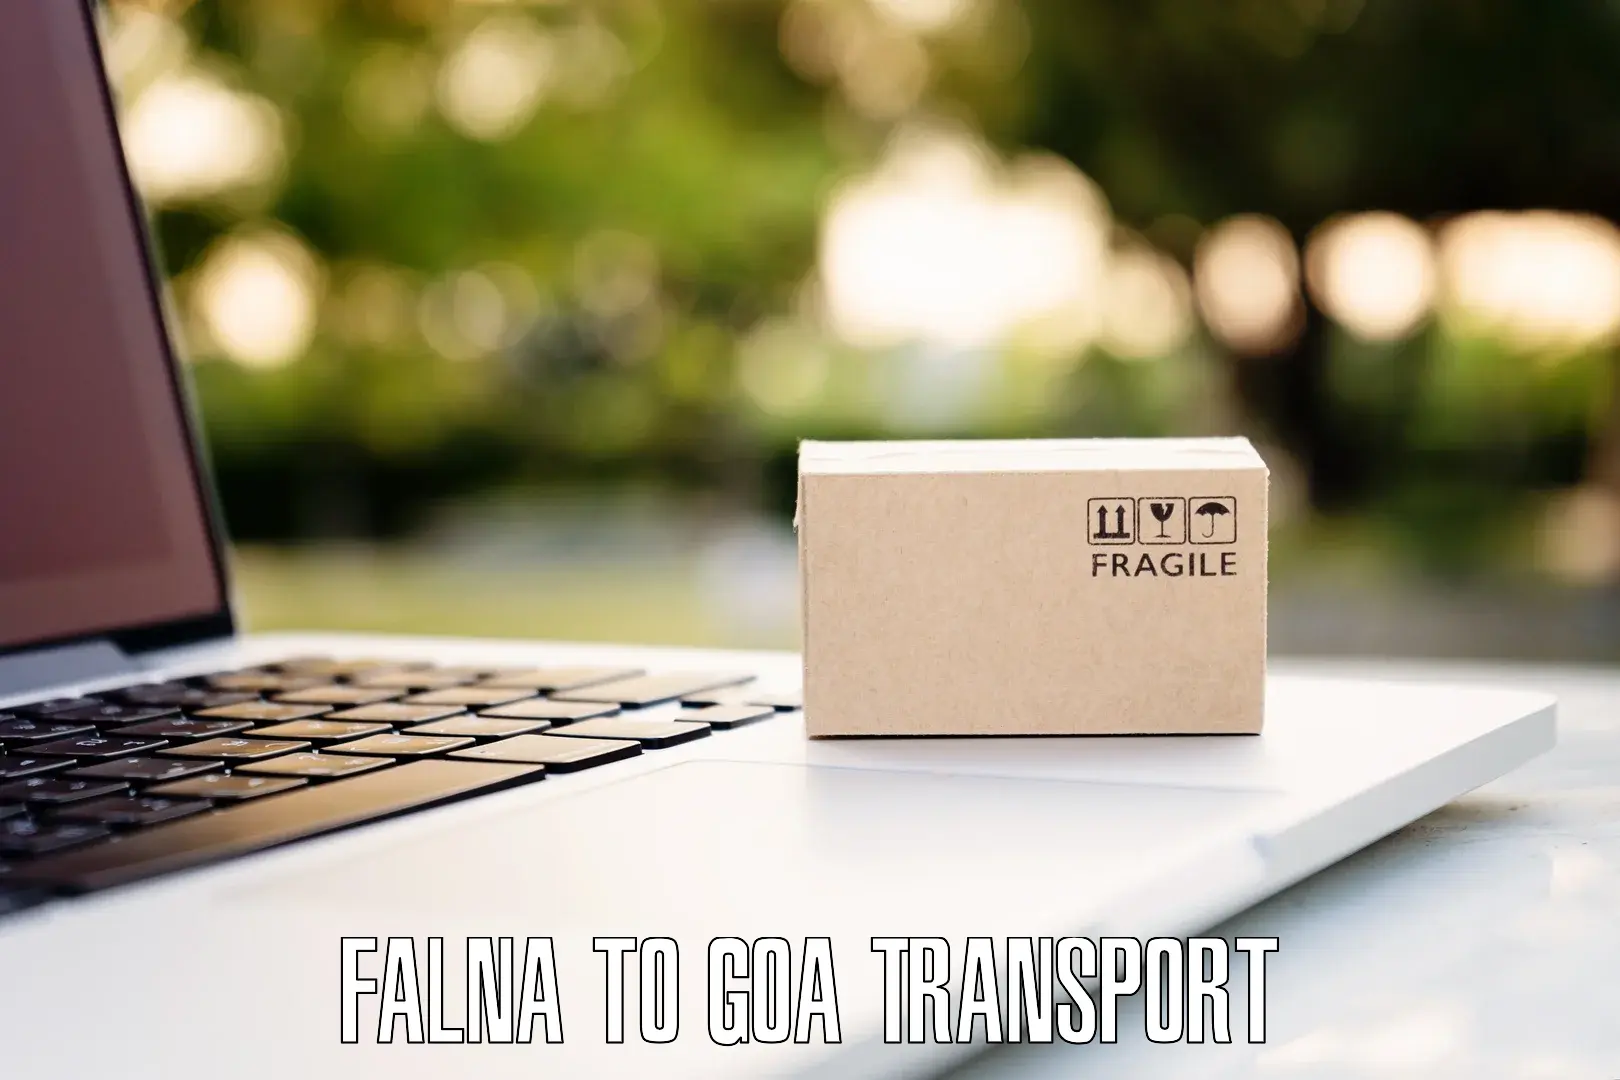 Commercial transport service in Falna to Vasco da Gama